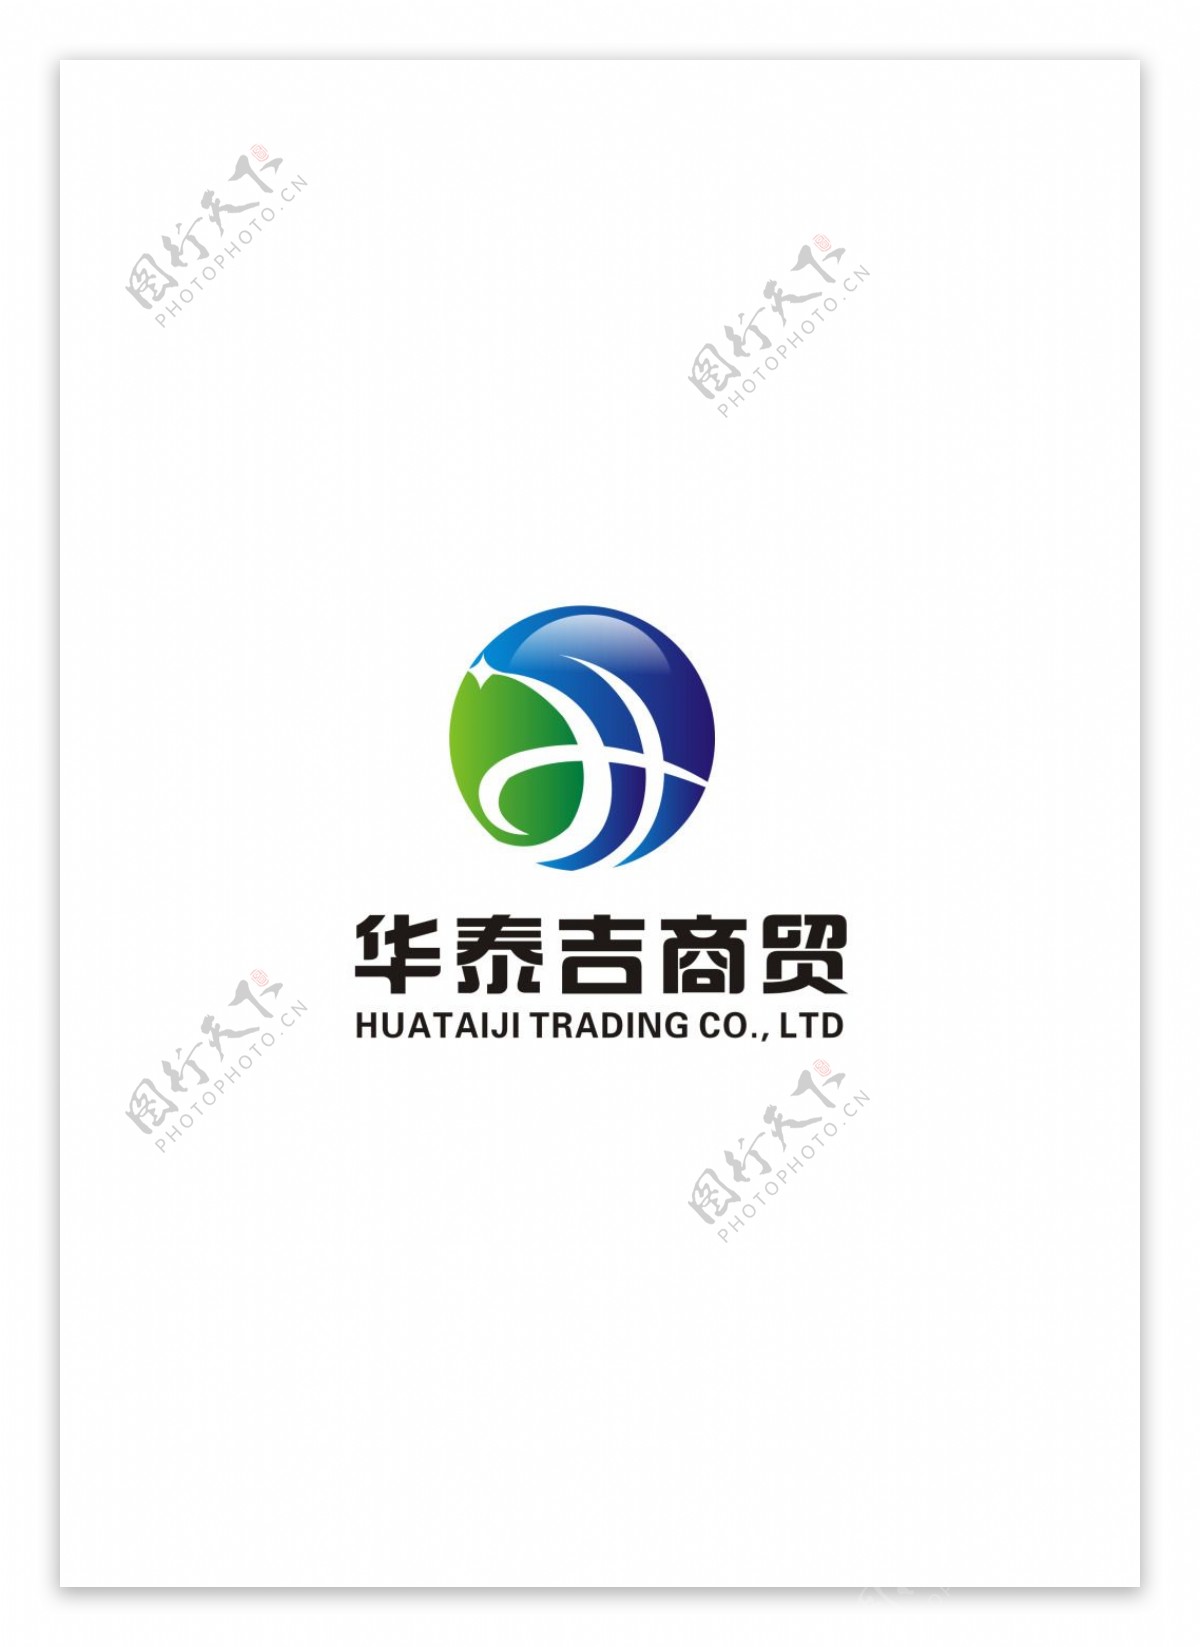 商贸公司logo设计图案